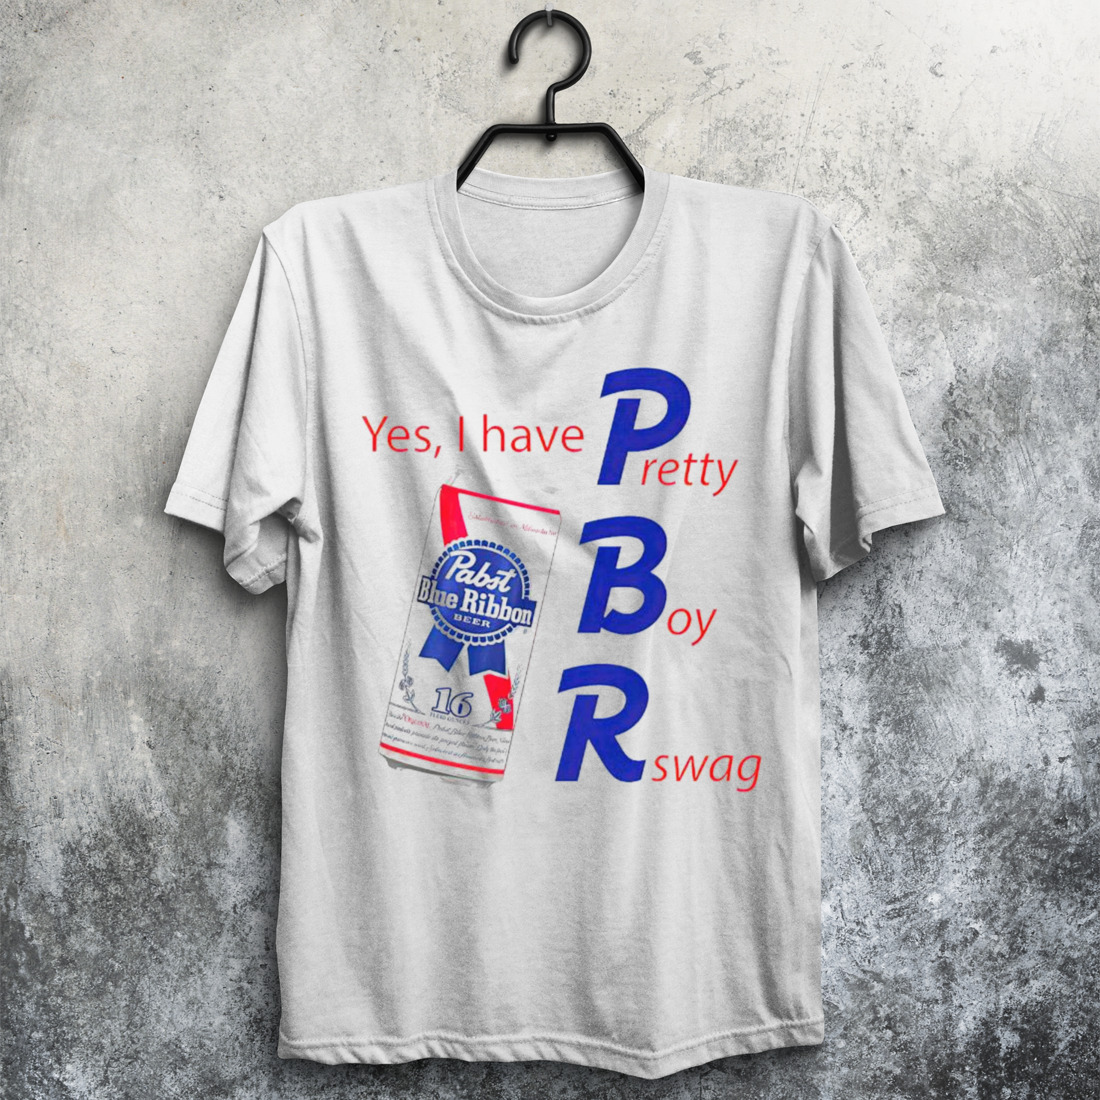 Yes I Have PBR Pretty Boy Rswag shirt